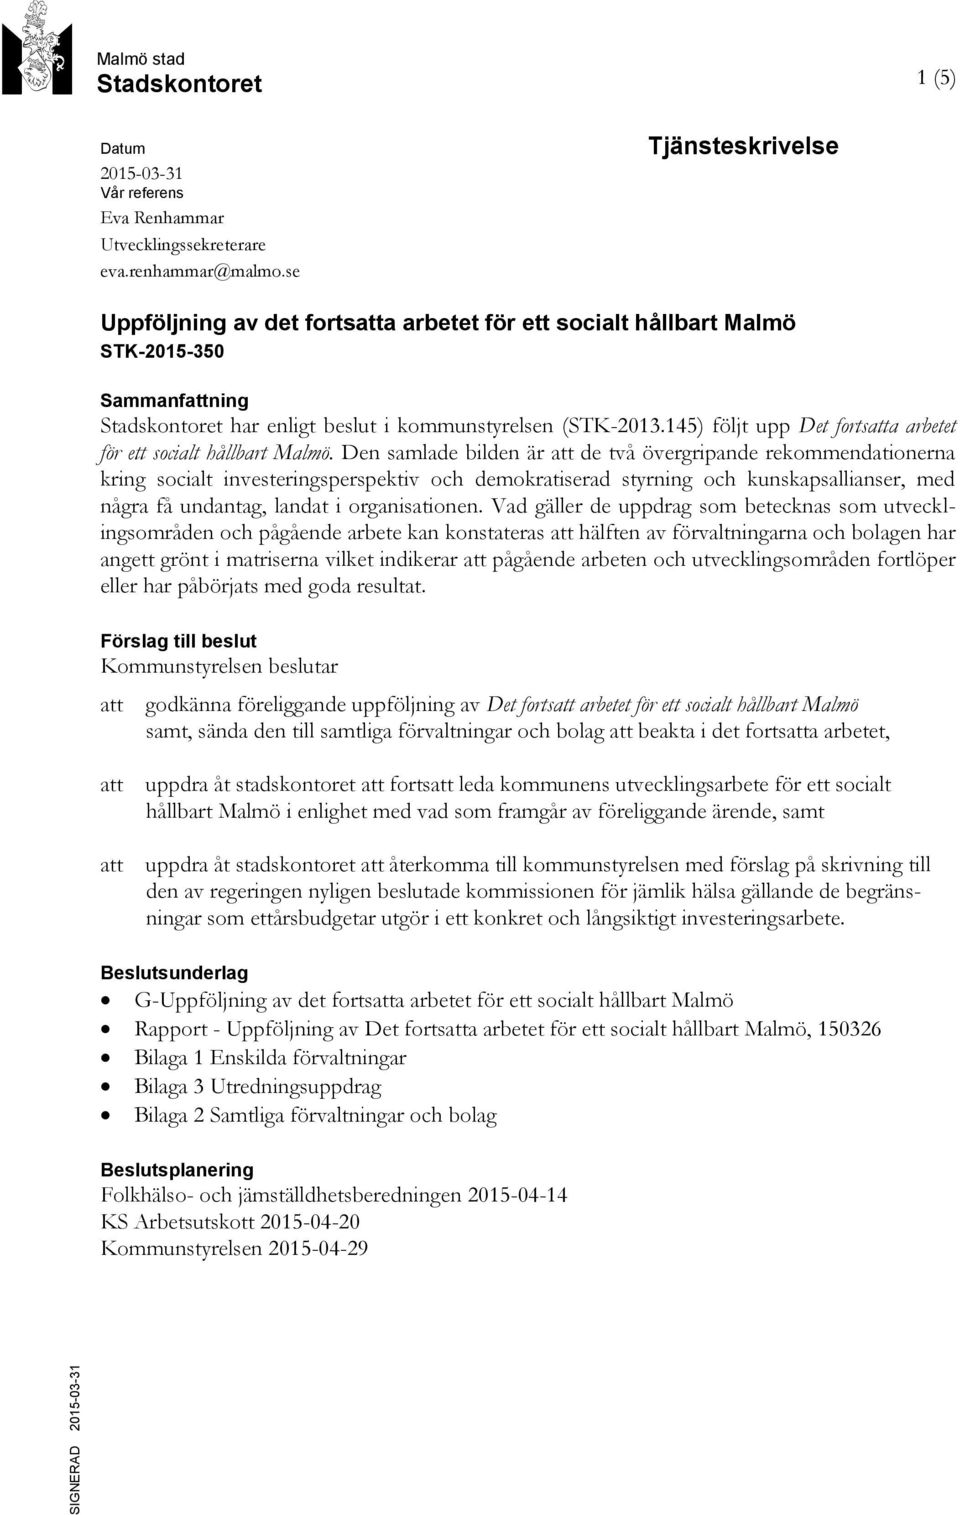 145) följt upp Det fortsatta arbetet för ett socialt hållbart Malmö.